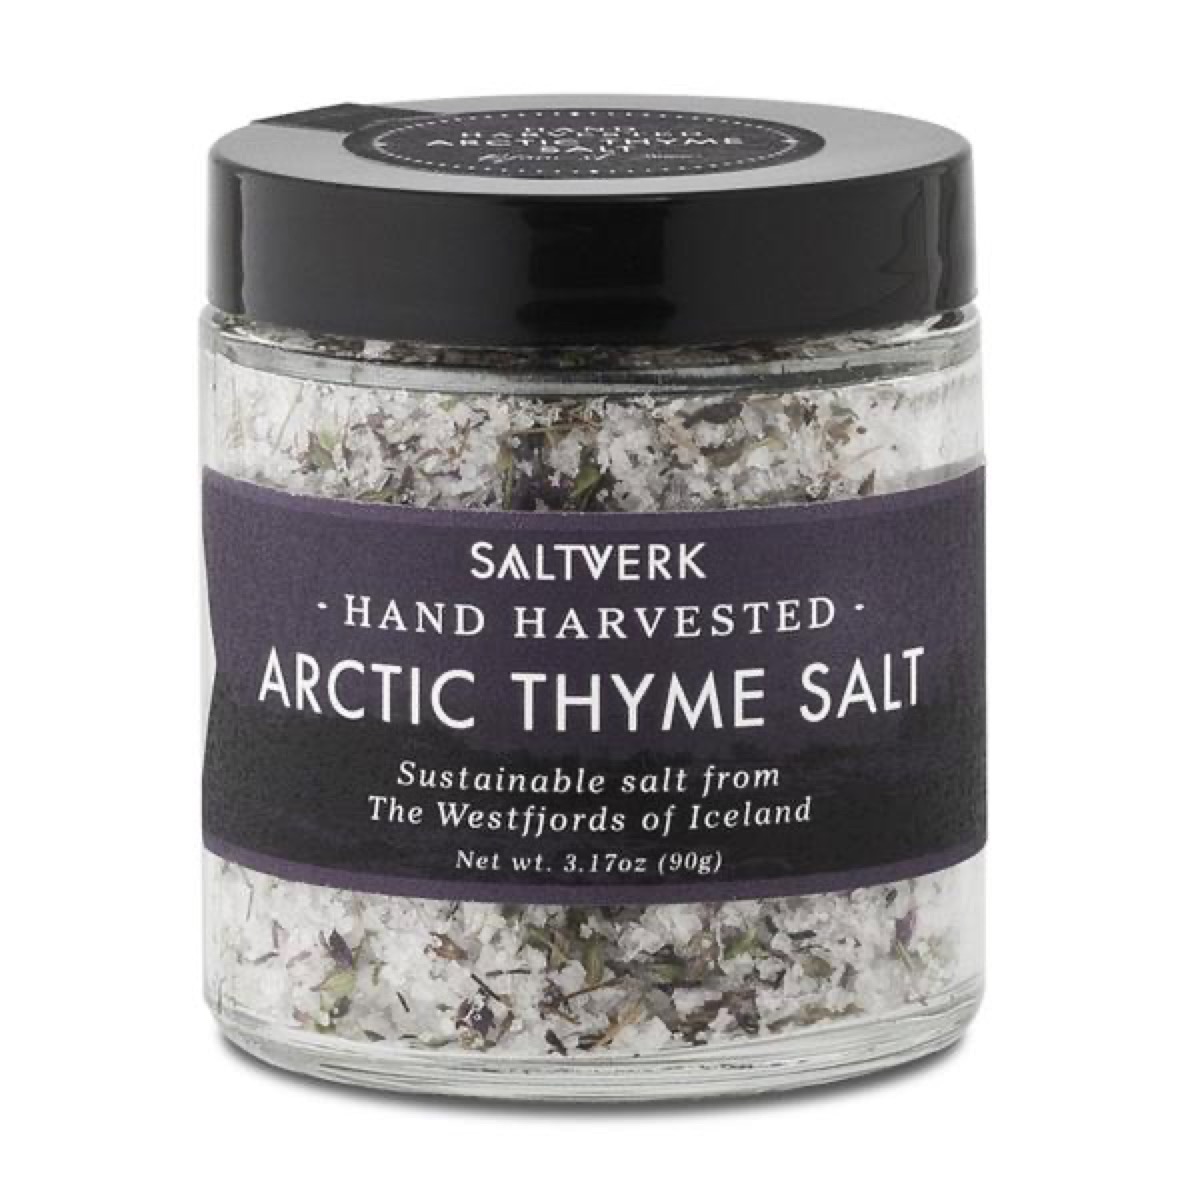 Saltverk Icelandic sea salt